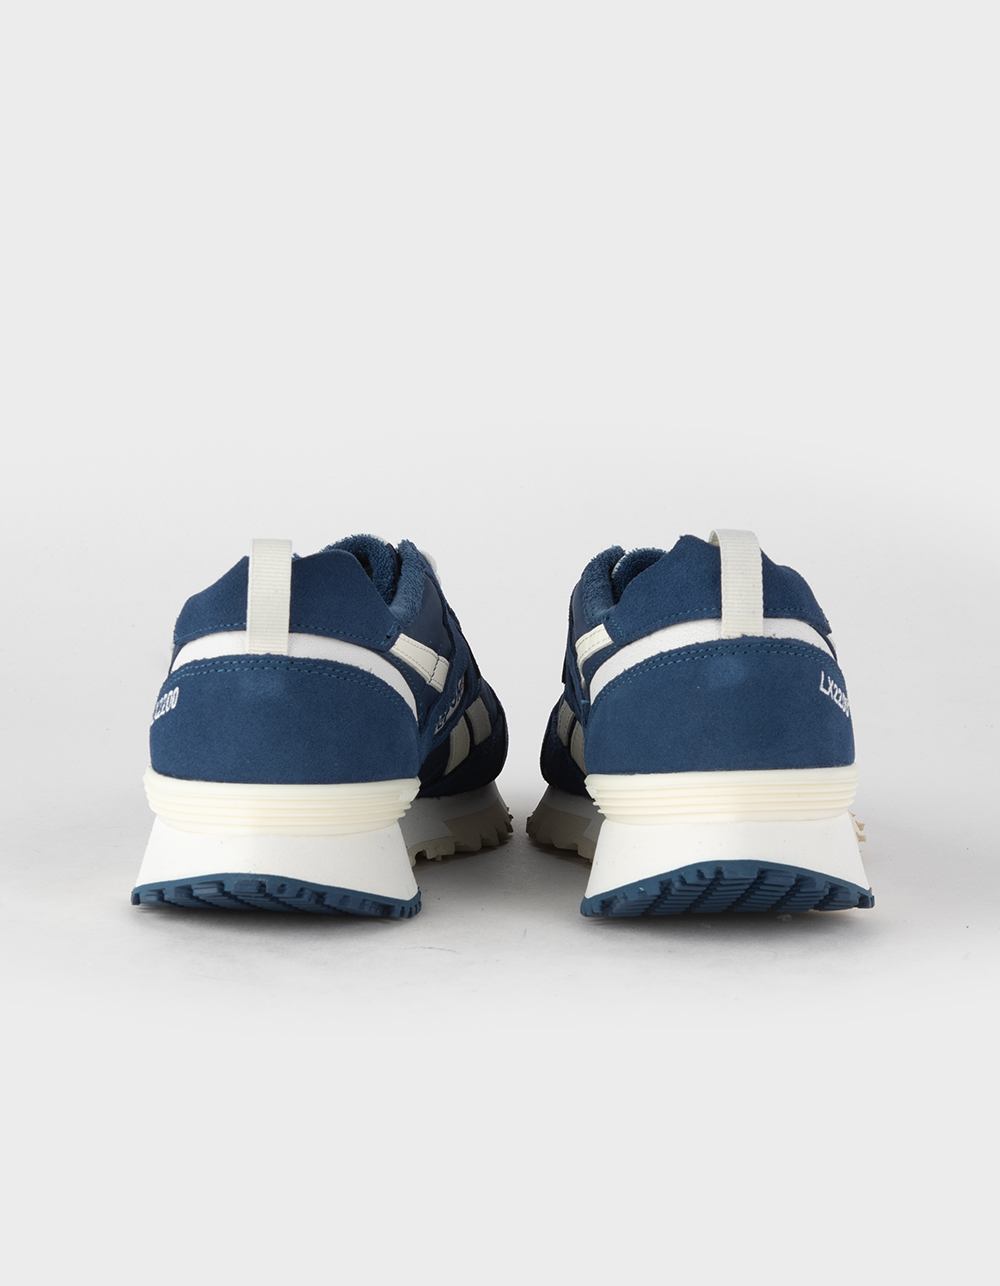 REEBOK LX2200 Shoes - BLUE | Tillys